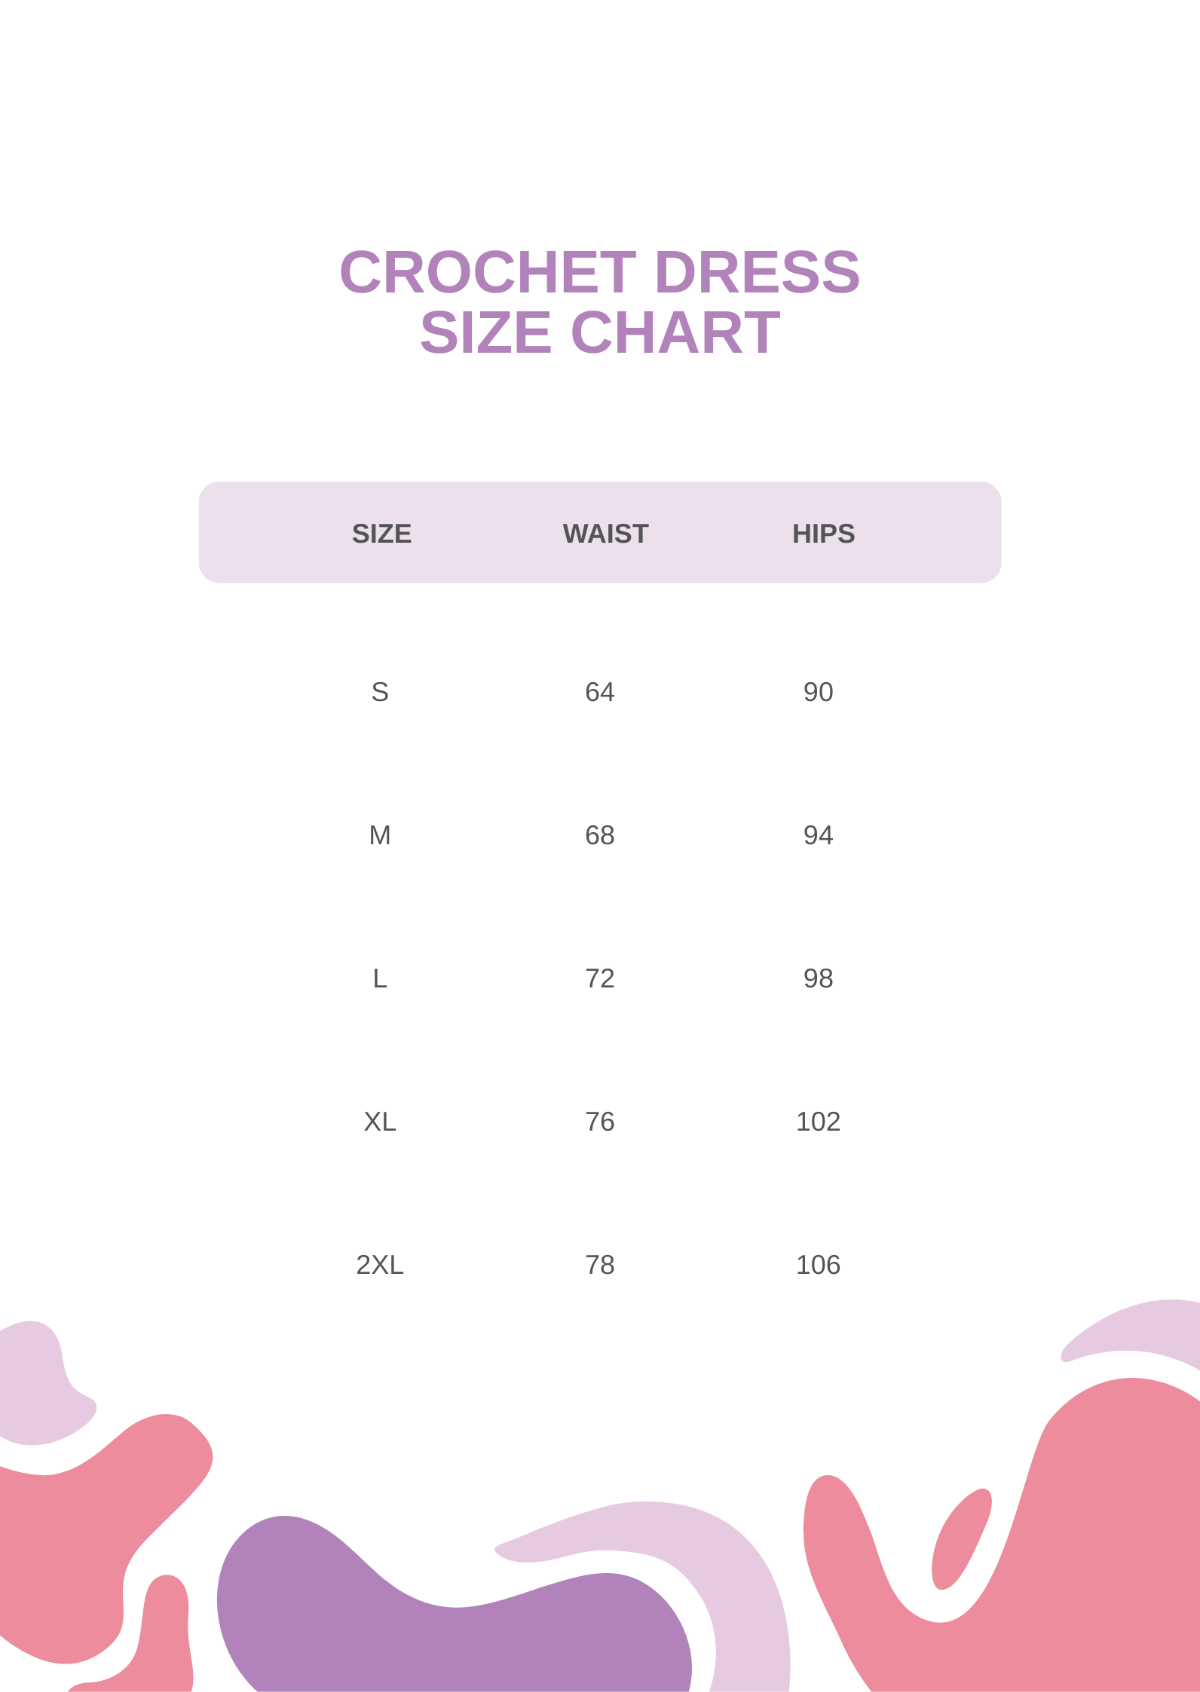 Crochet Dress Size Chart Template